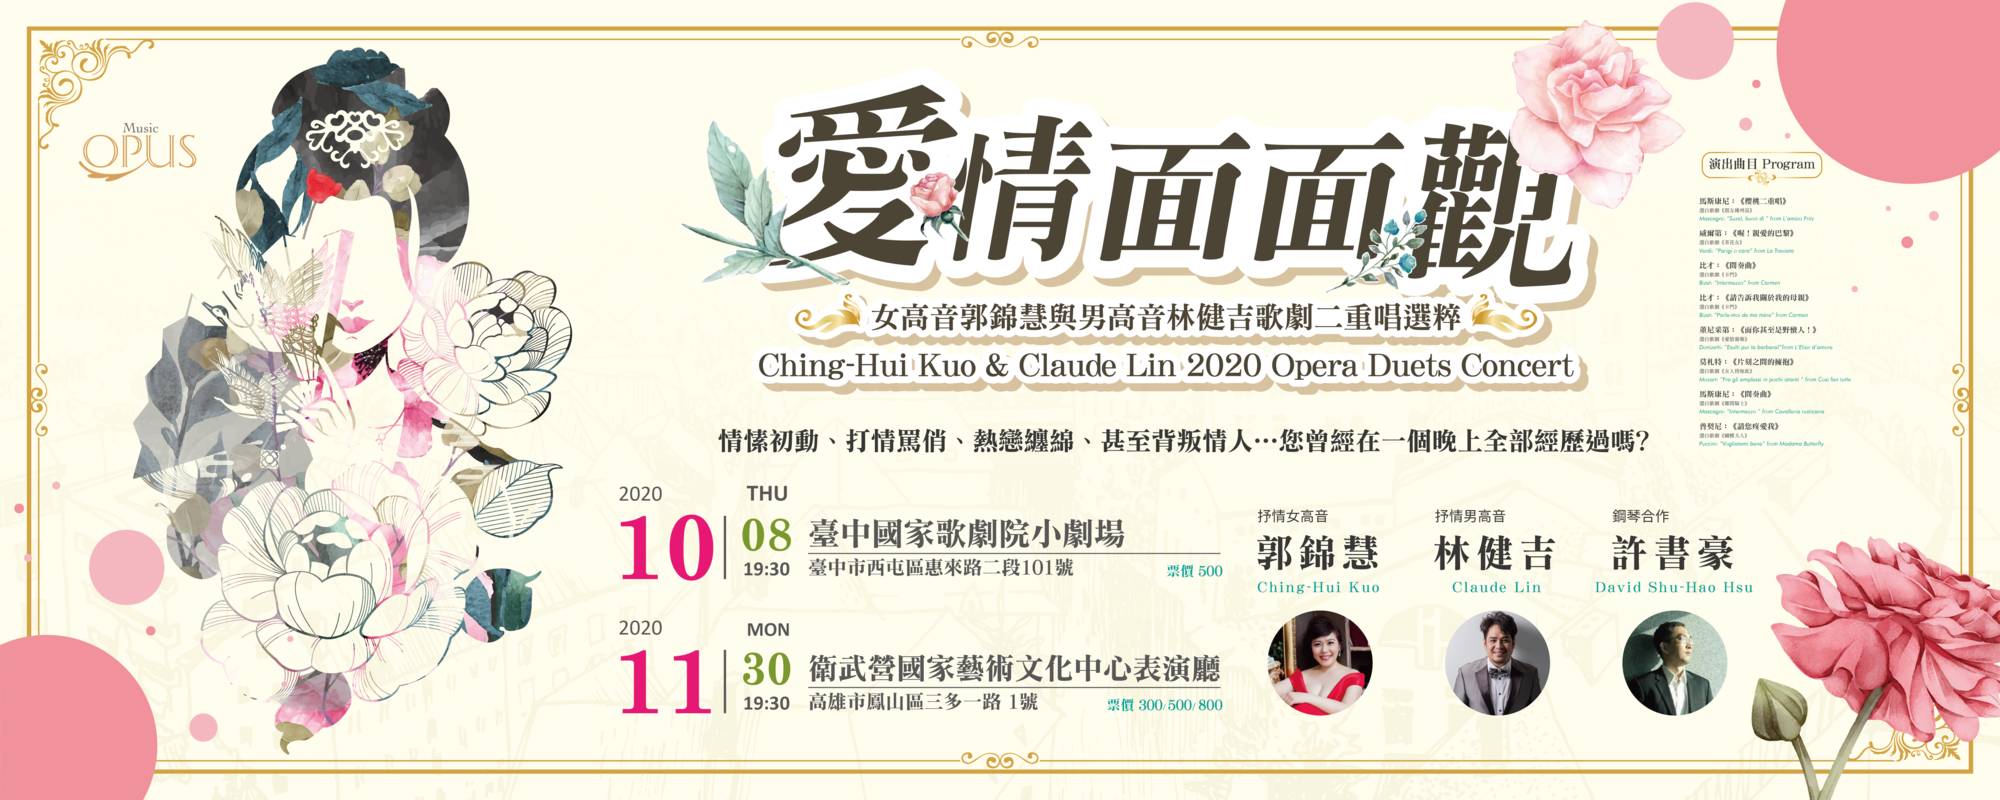 Ching-Hui Kuo & Claude Lin 2020 Opera Duets Concert 